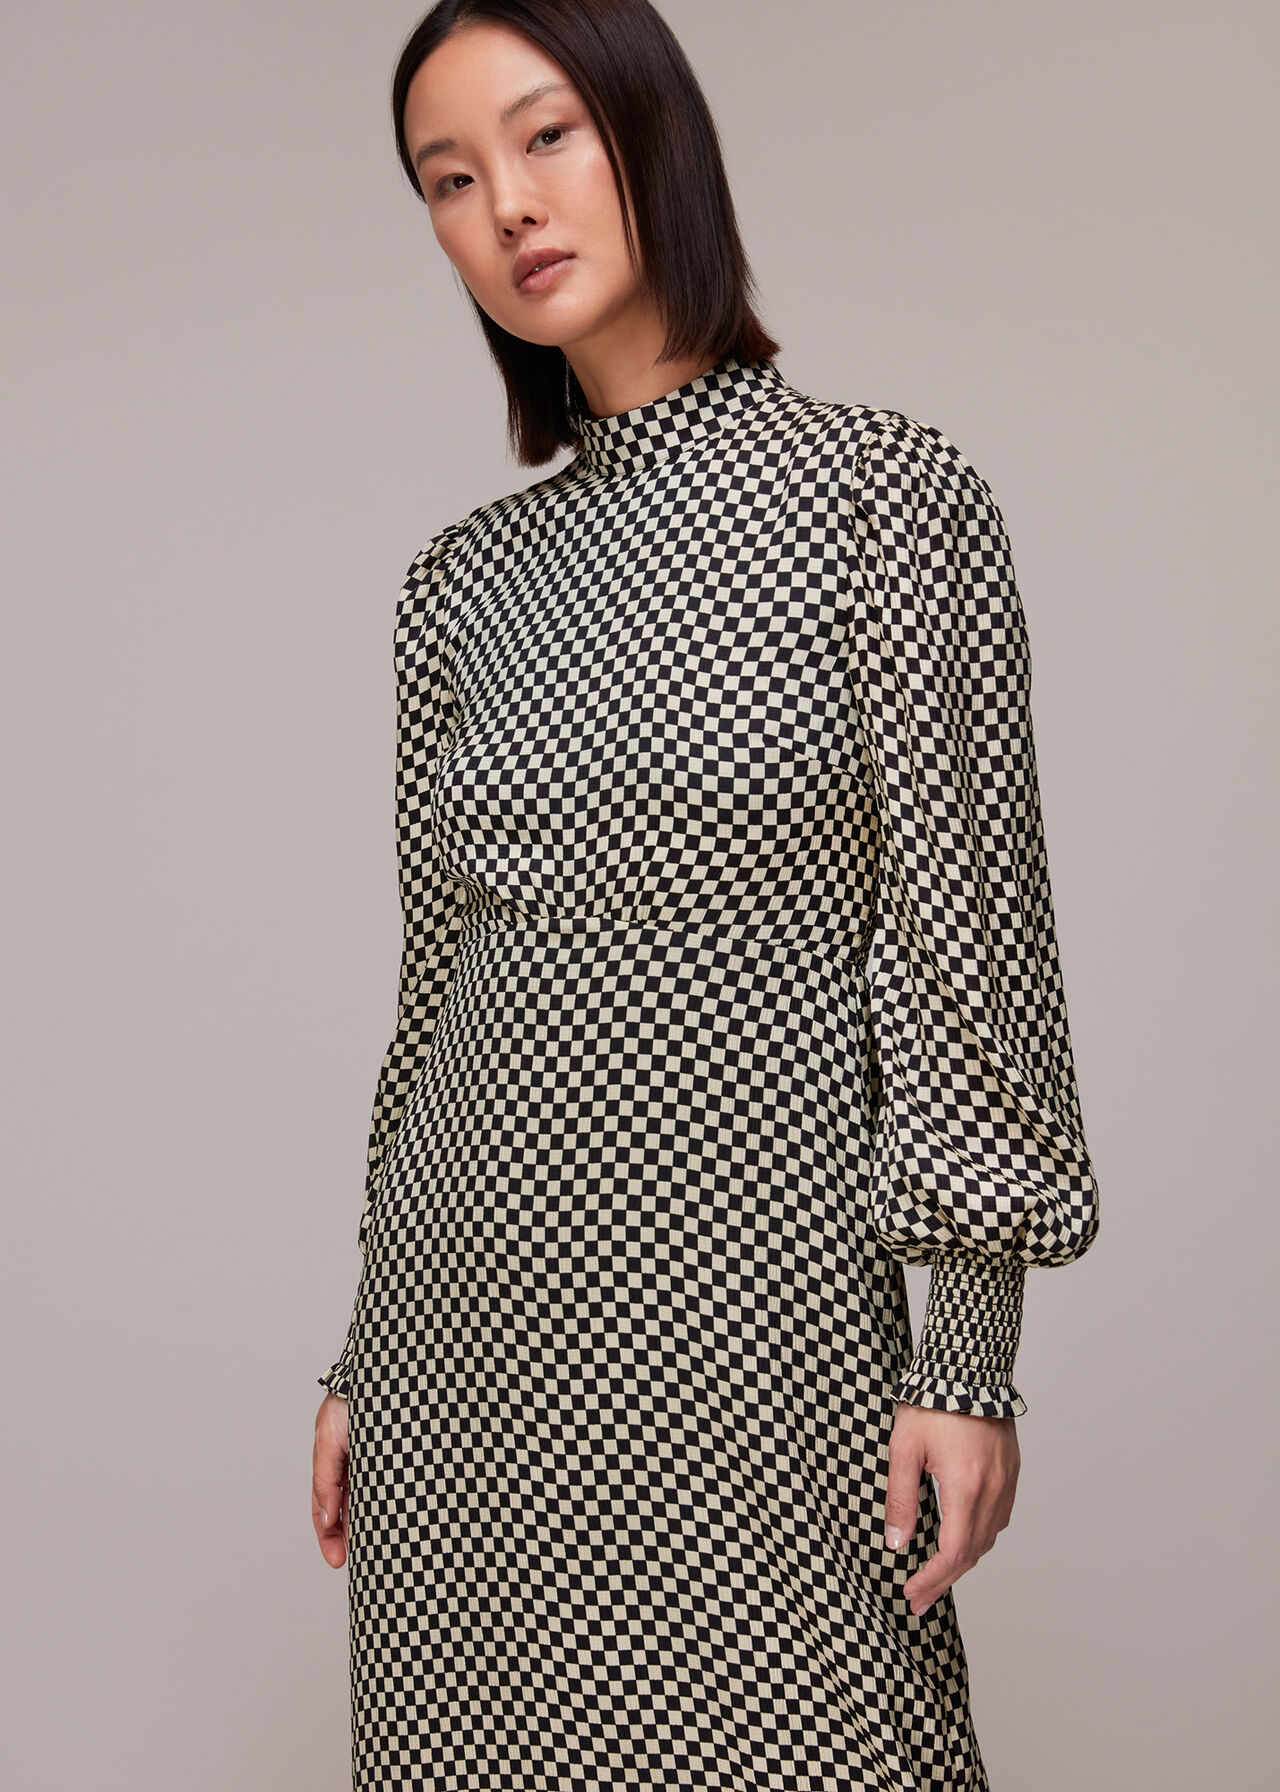 Darcie Checkerboard Midi Dress